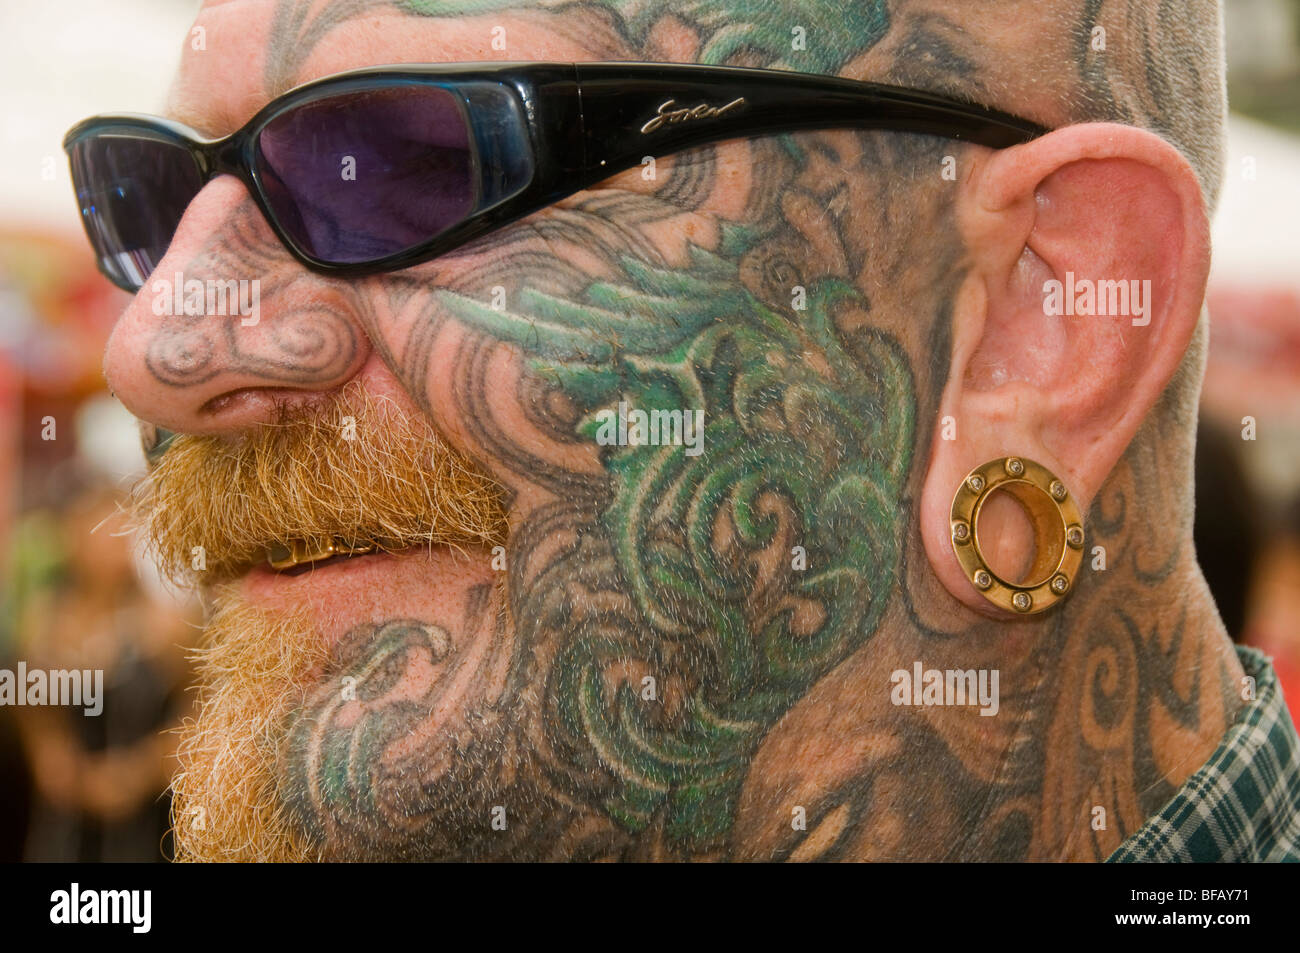 Tatouage fantastique design au Festival de tatouage à Bangkok en Thaïlande Banque D'Images